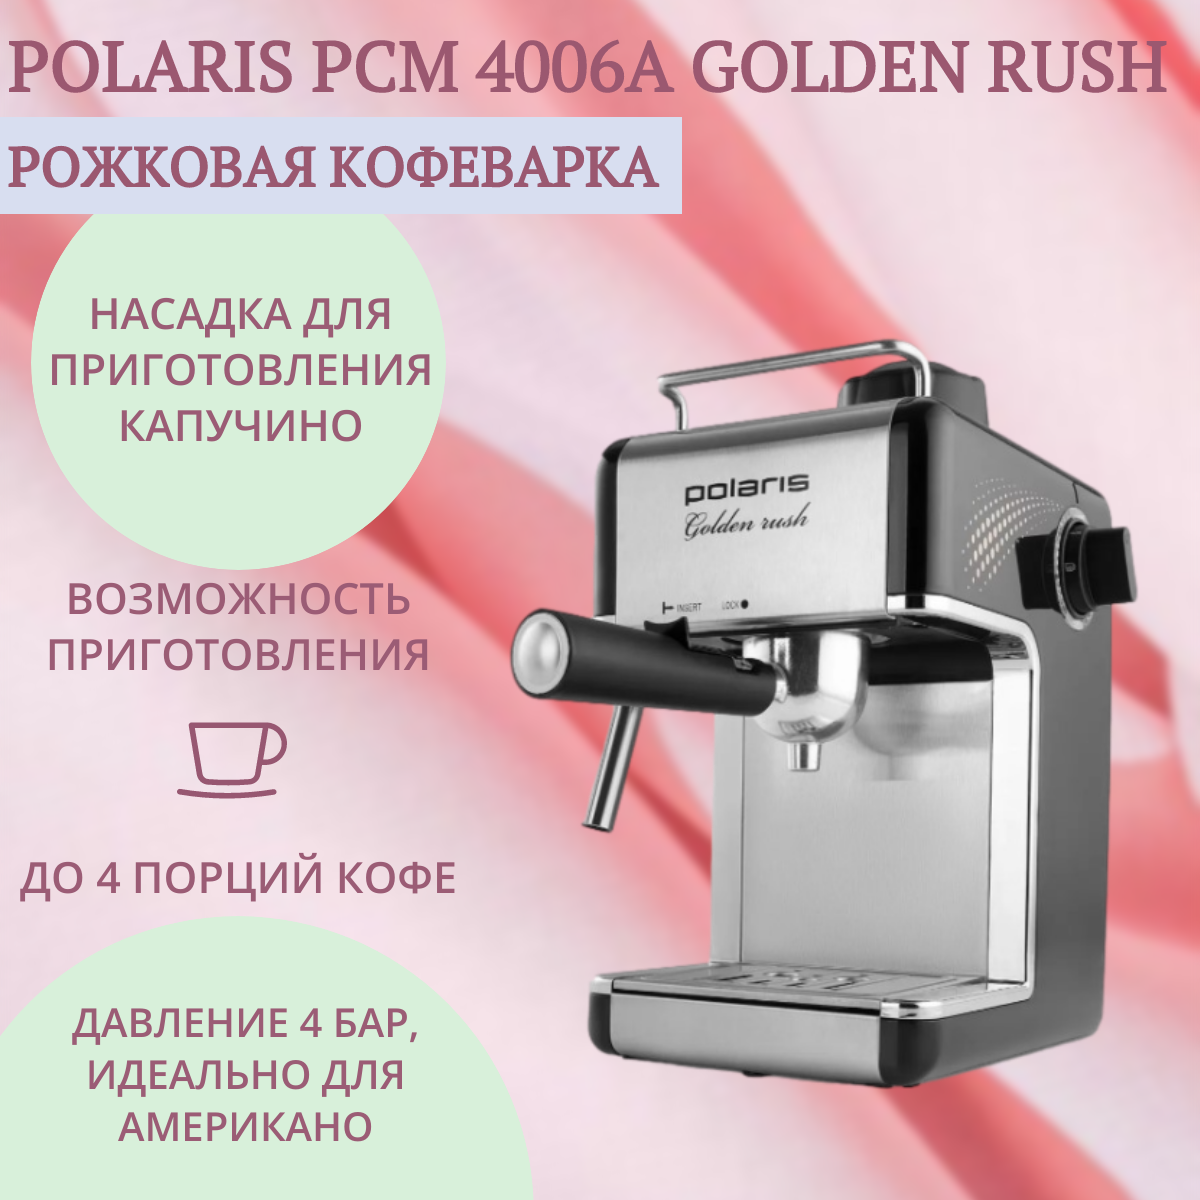 Кофеварка Polaris PCM 4006A Golden rush - фото №9